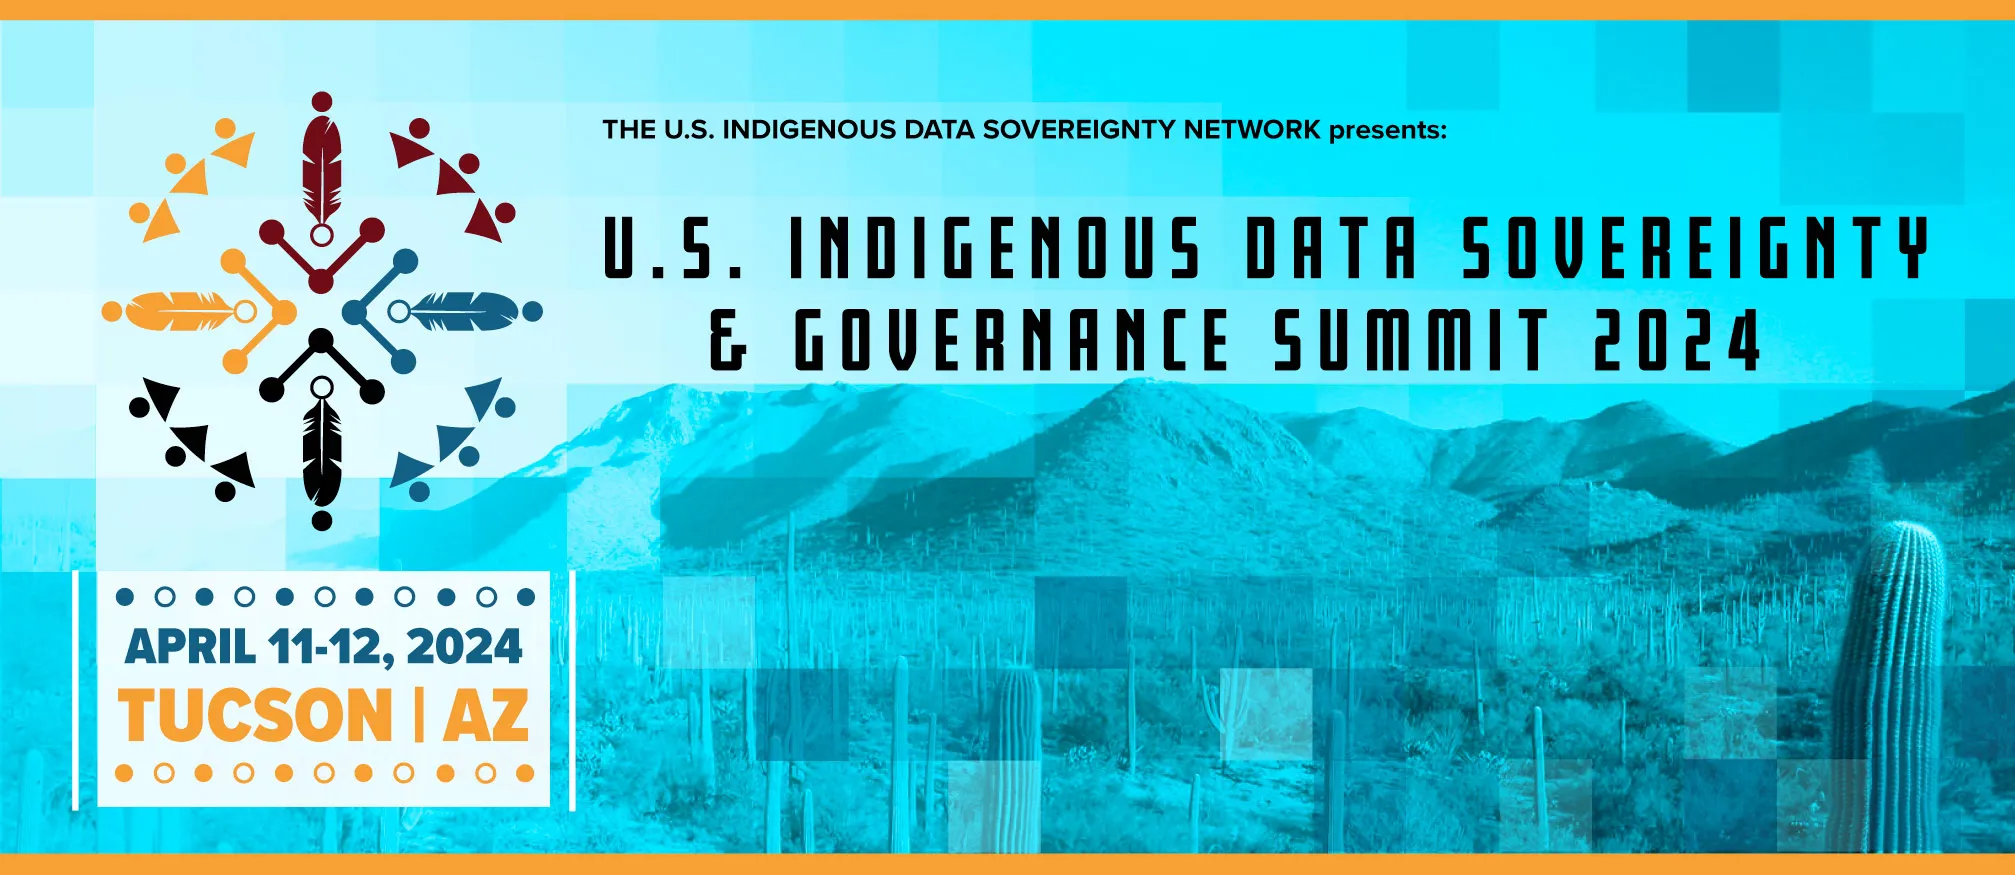 The US Indigenous Sovereignty Network presents US Indigenous Data Sovereignty & Governance Summit 2024, April 11-12 2024, Tucson, AZ.